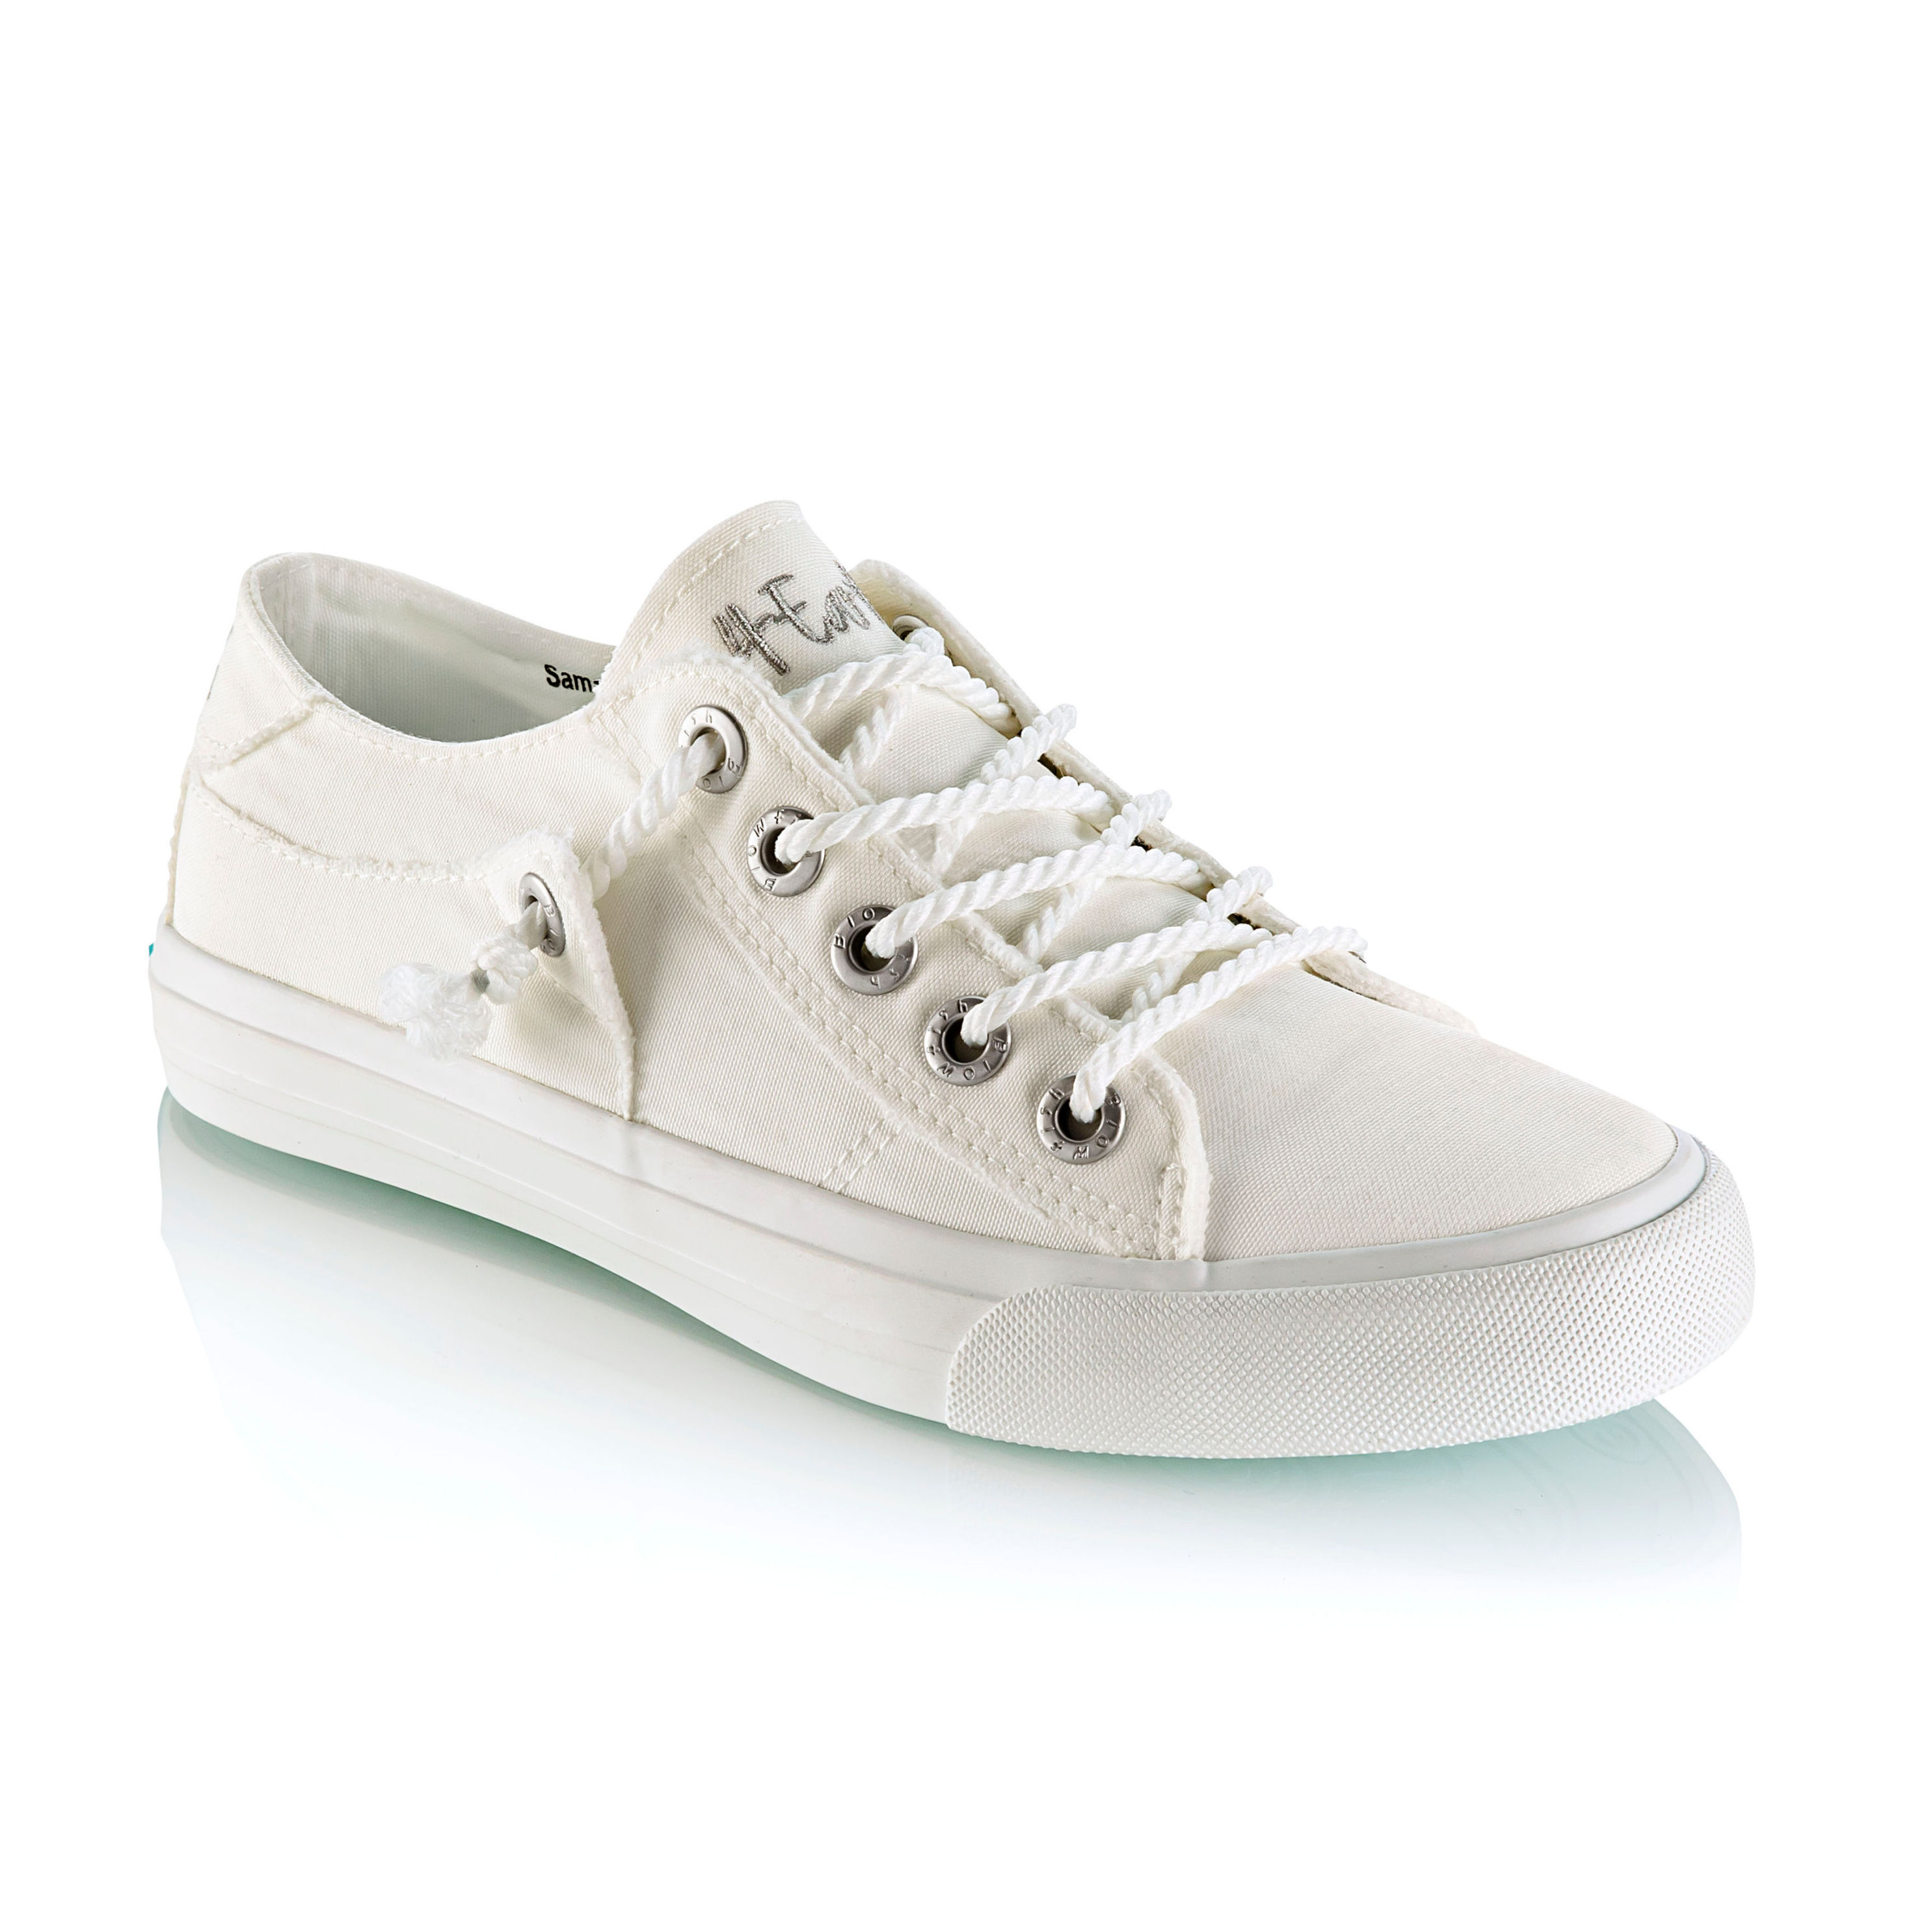 Blowfish Sneaker Martina4Earth off white, Größe: 42 online kaufen - Orbisana